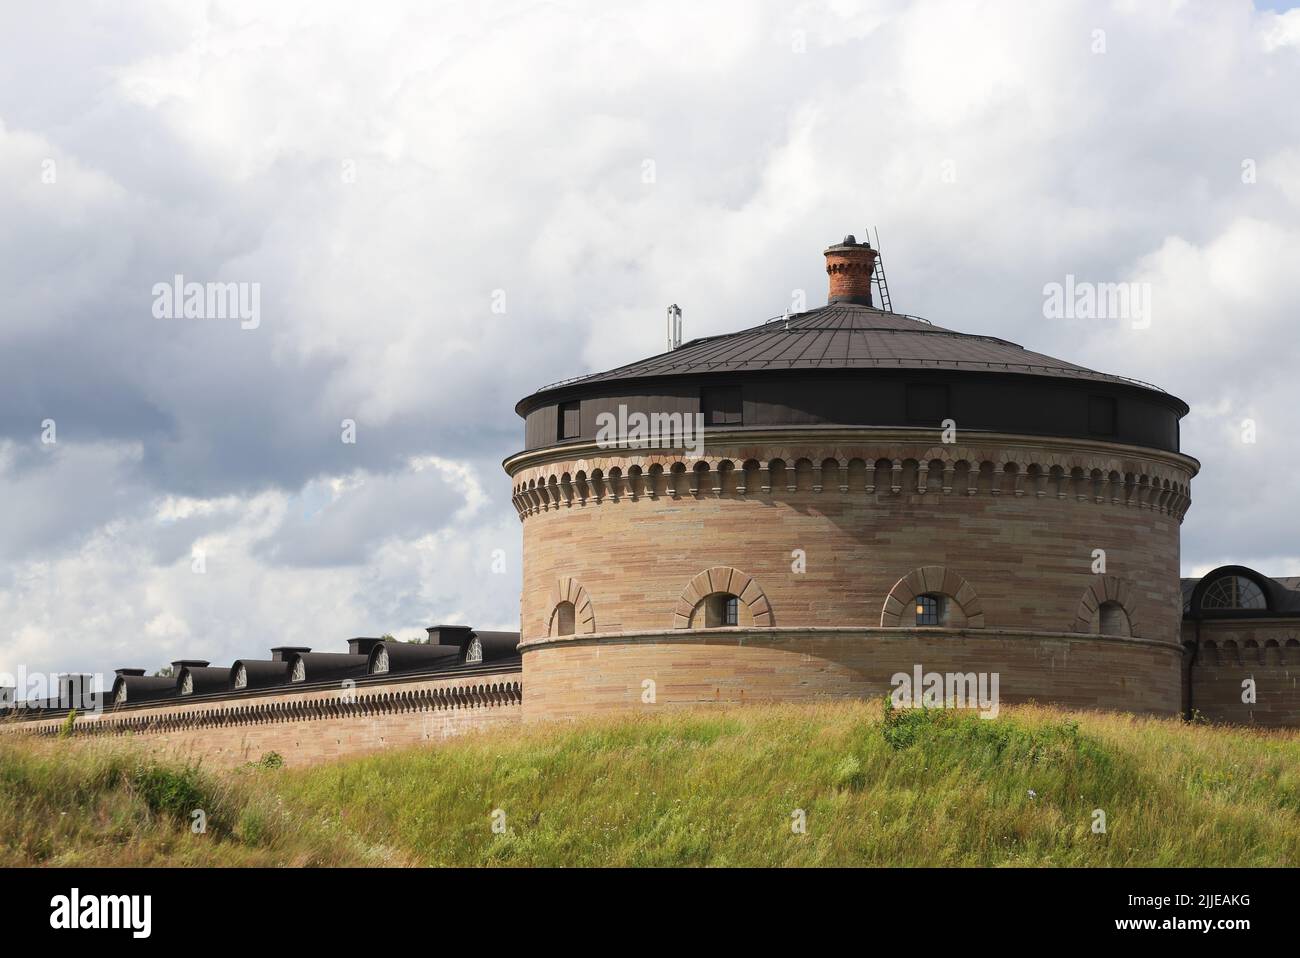 La torre sur de la fortaleza Karlsborg del siglo 19th situada en la provincia sueca de Vastergotland. Foto de stock